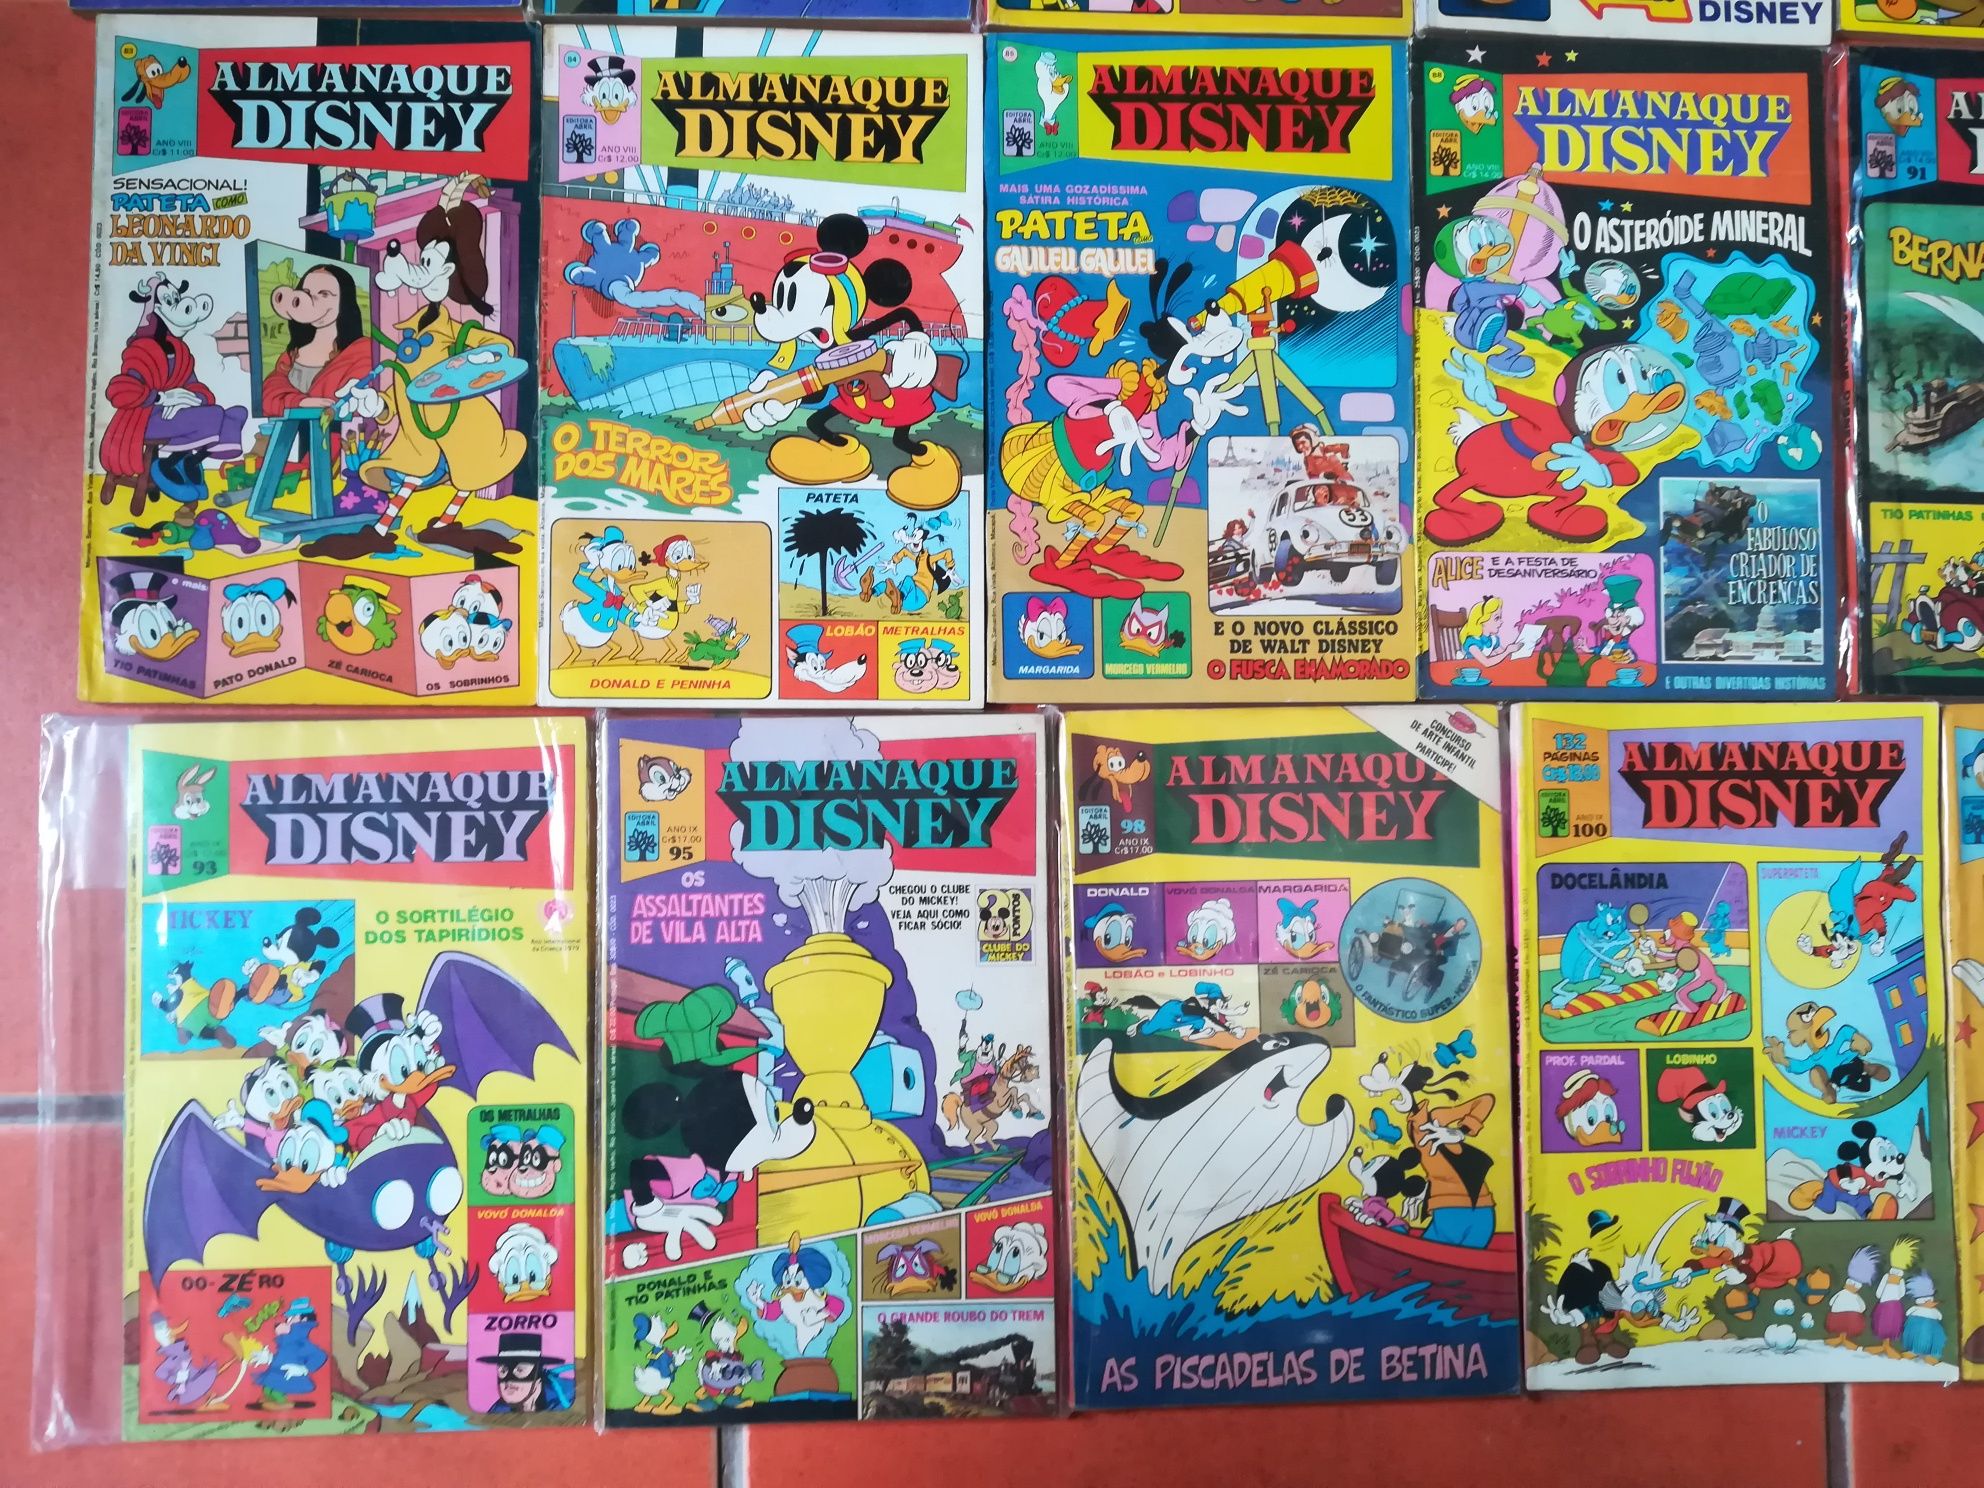 32 Almanaques Disney desde 1972